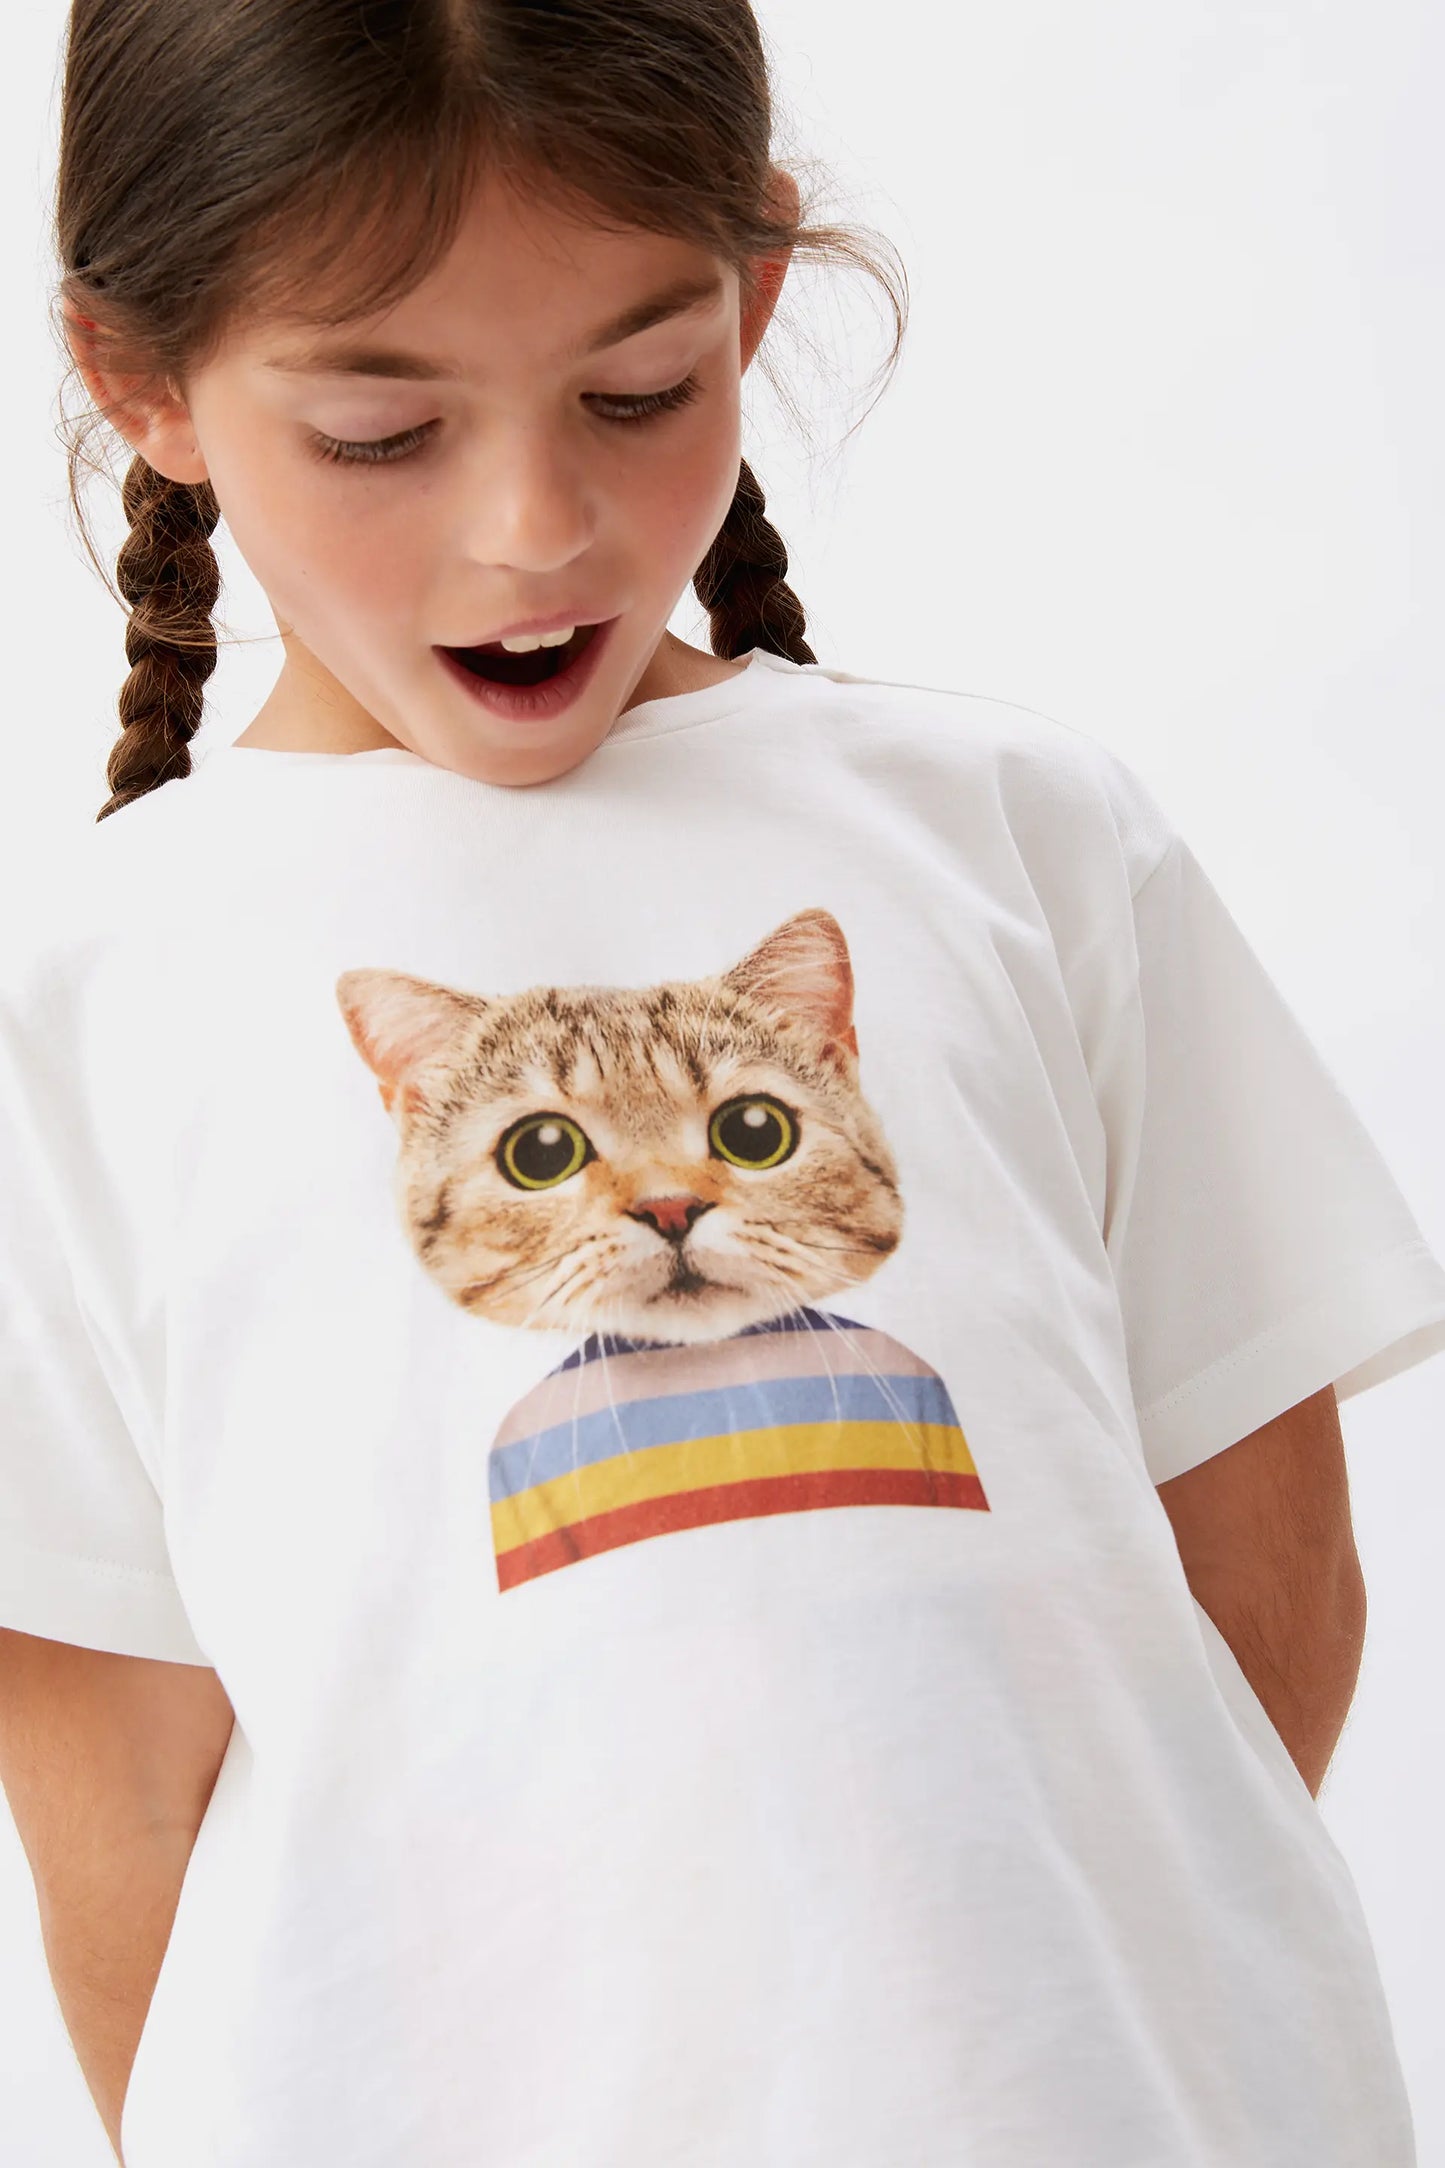 Camiseta unisex print de gato blanca